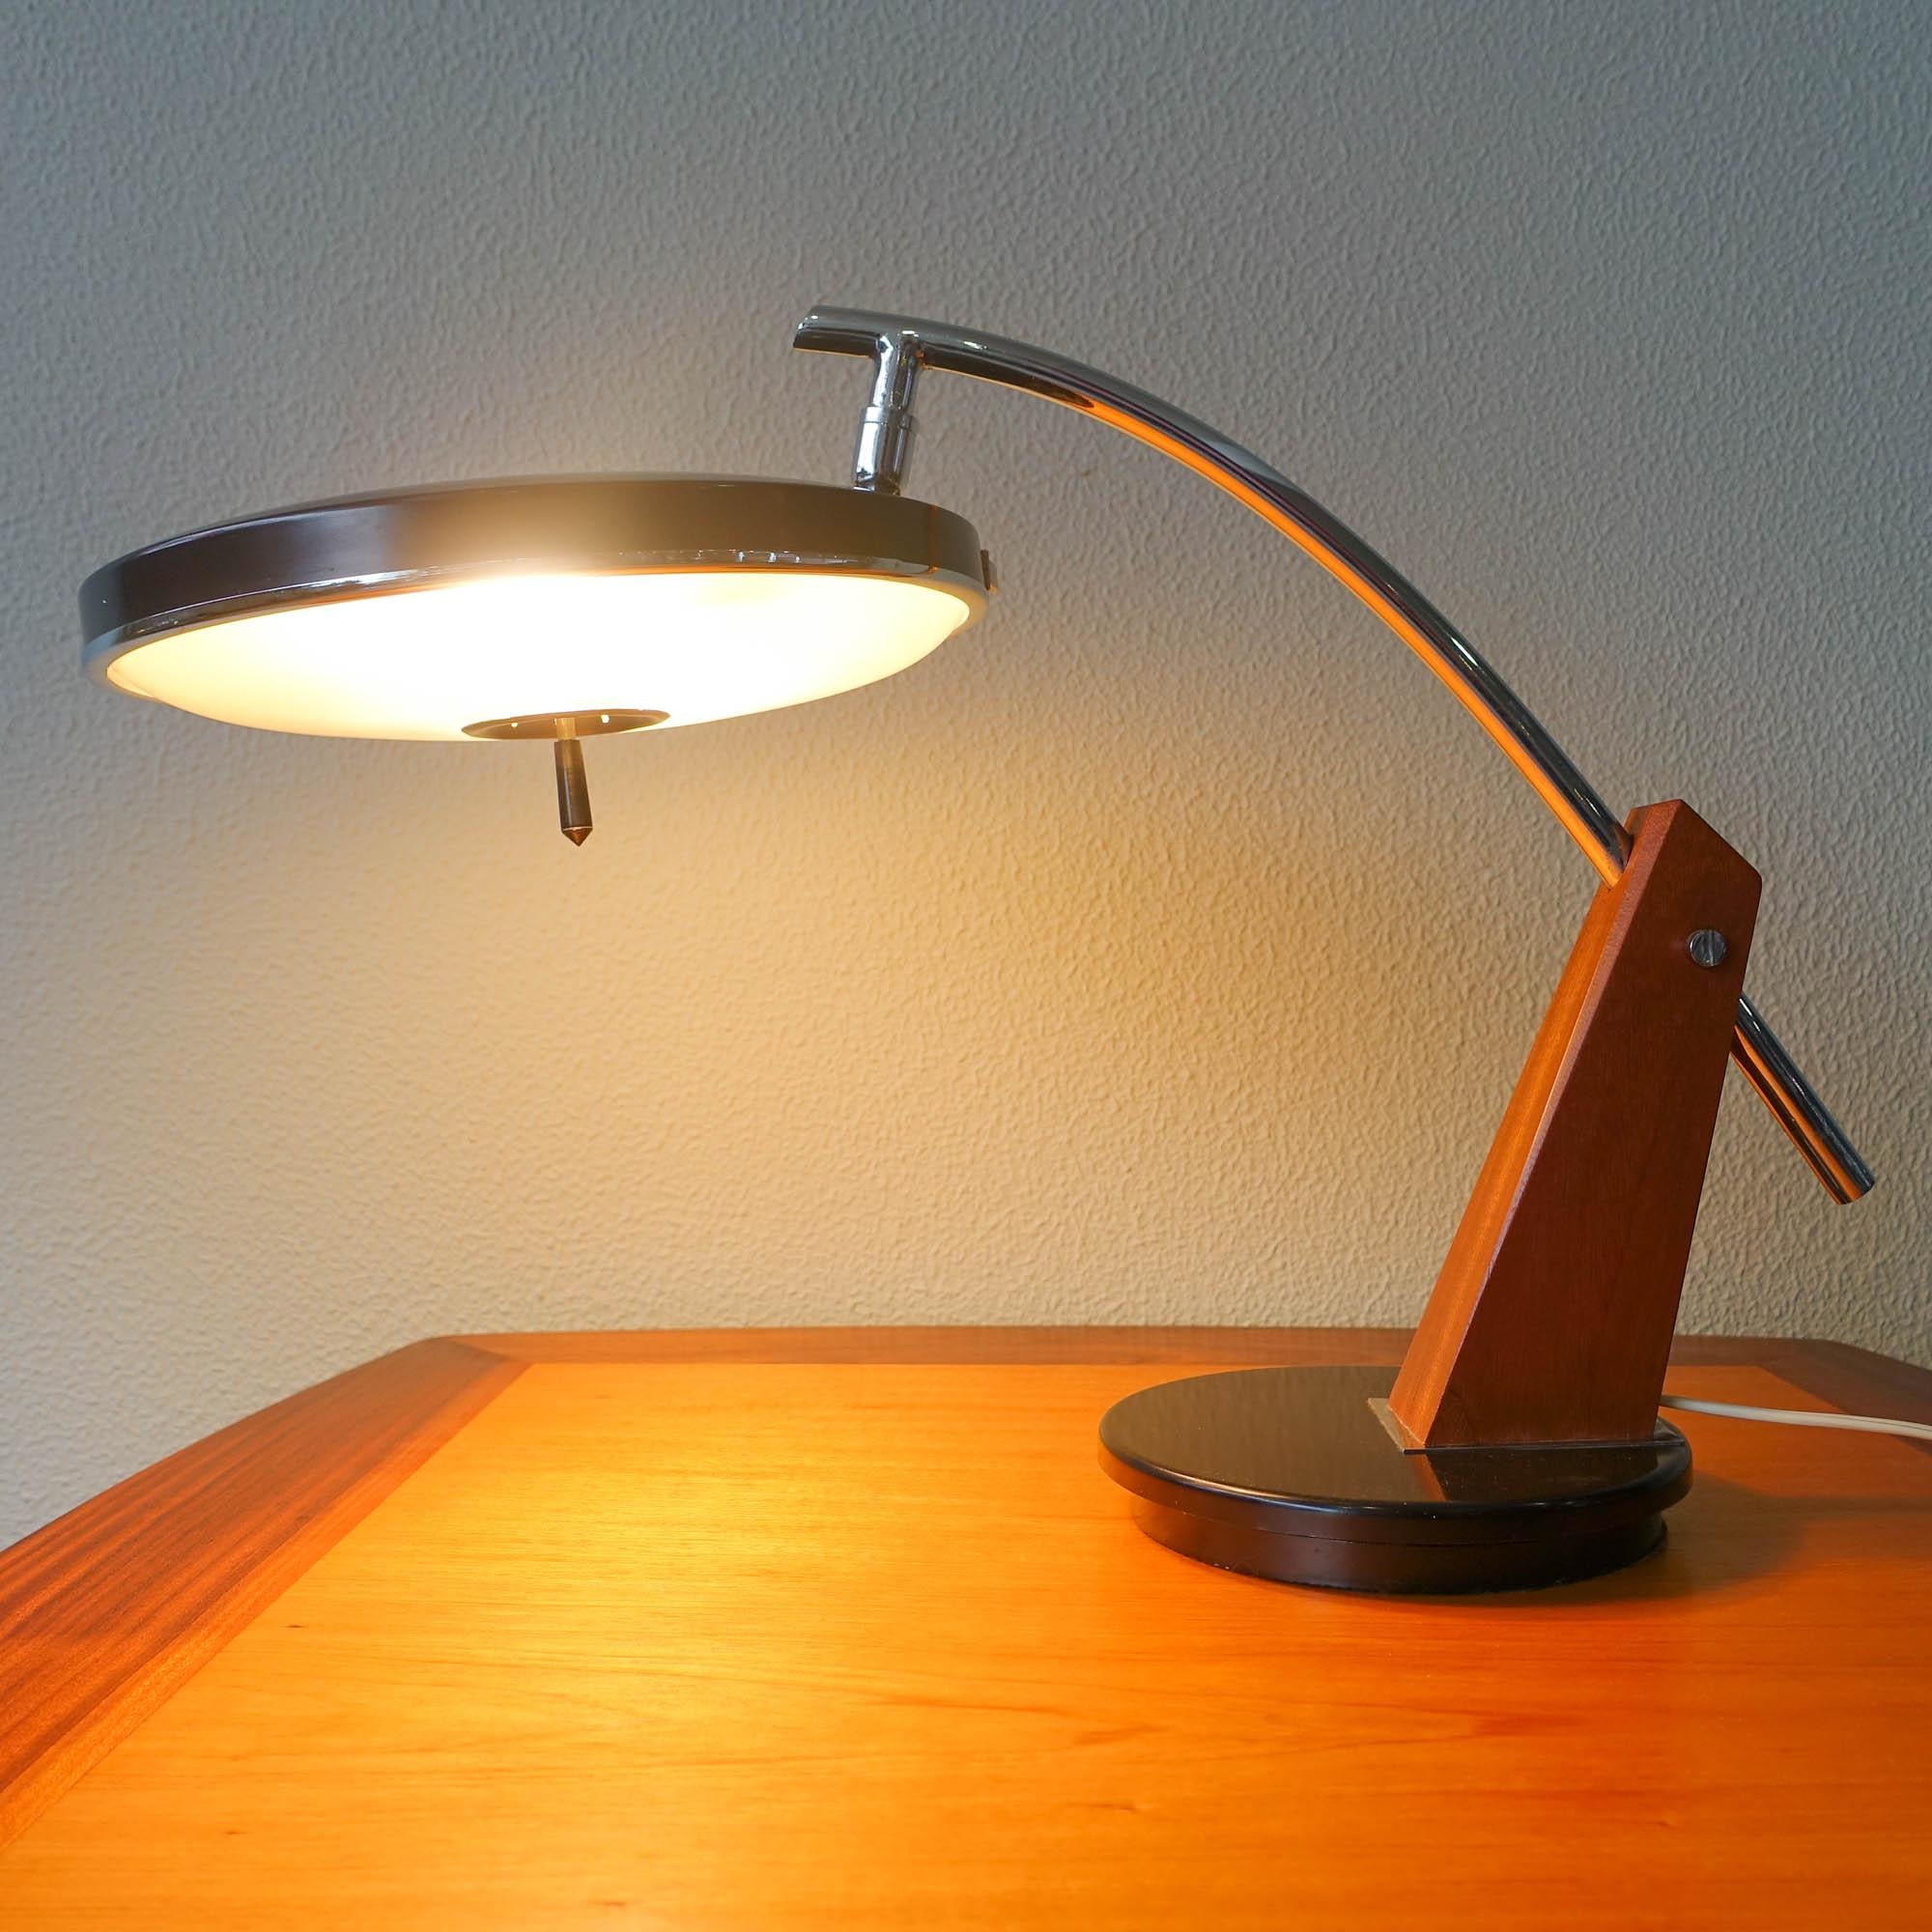 Ce modèle inhabituel de lampe de bureau a été conçu et fabriqué par Lupela, en Espagne, dans les années 1960. La lampe est dotée d'une base pivotante et l'abat-jour pivote également dans toutes les directions. Le bras est un mélange de bois et de